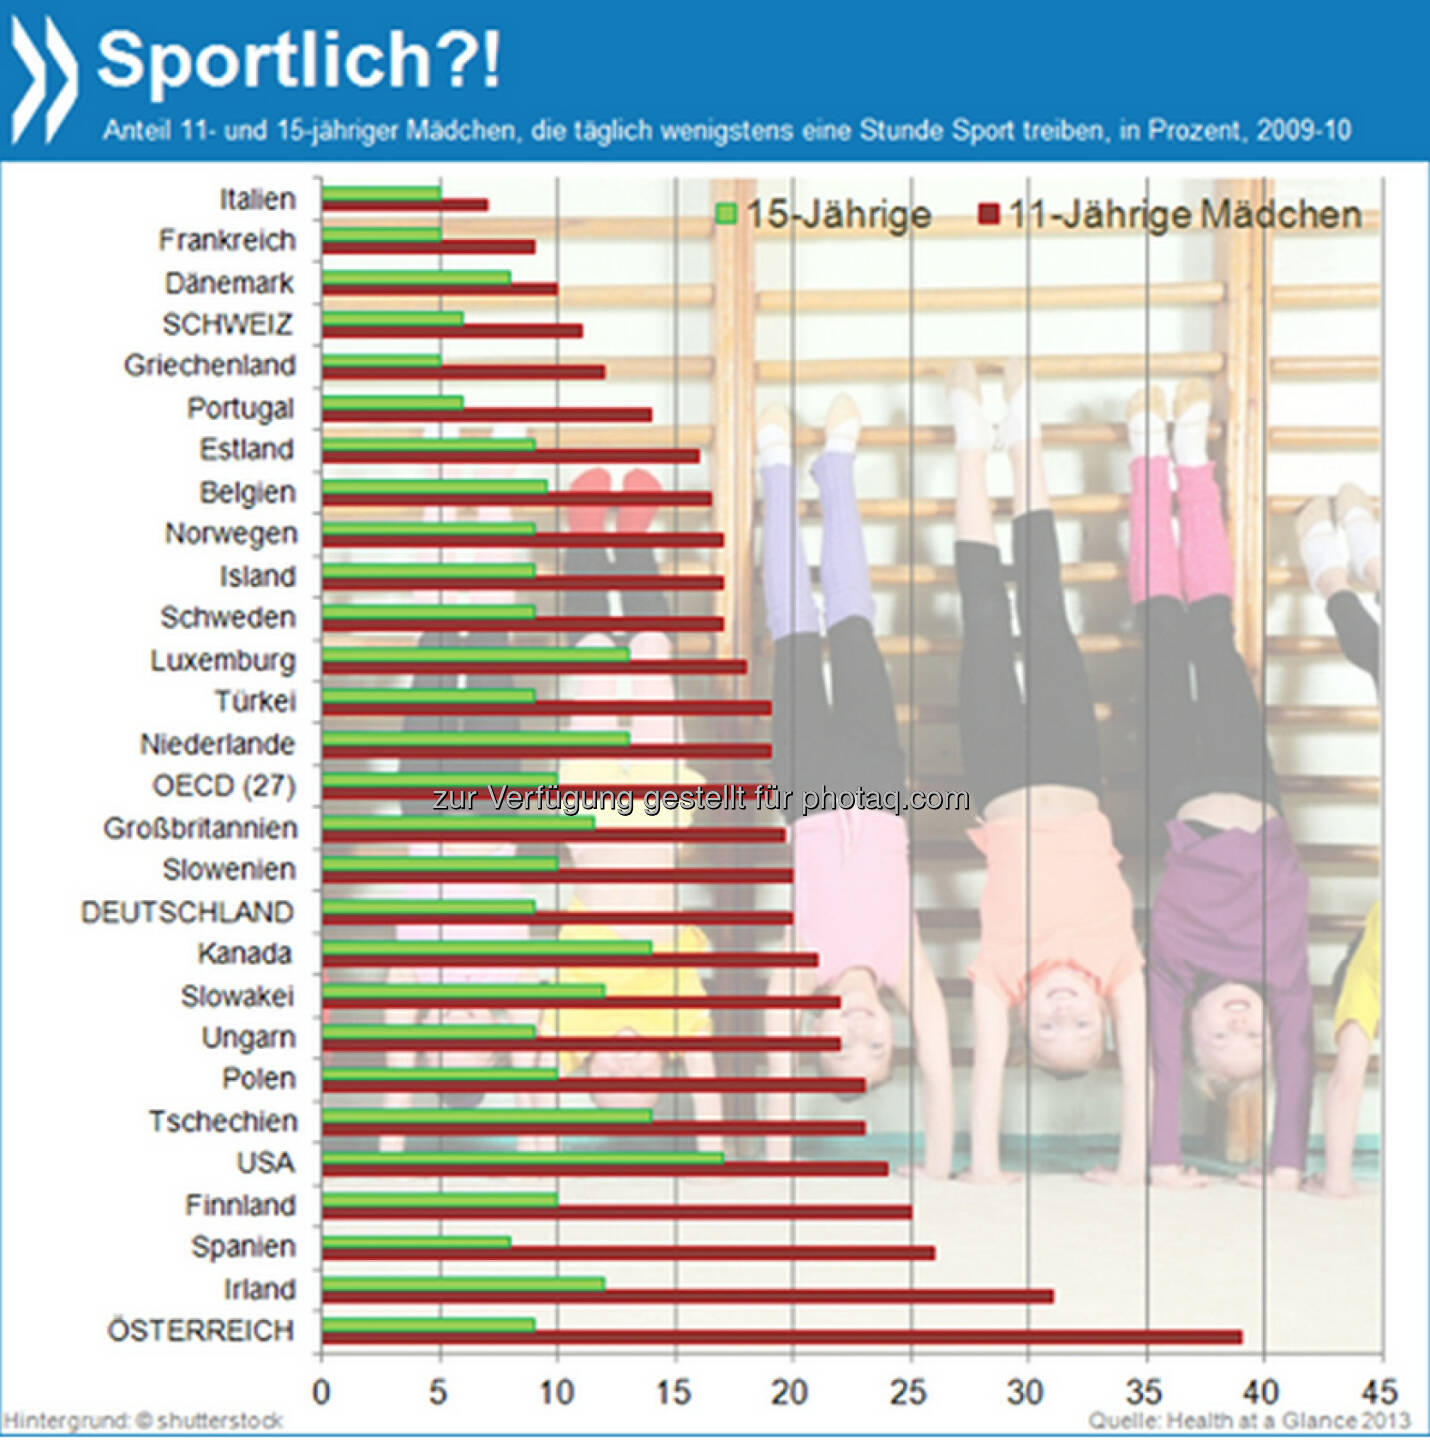 Alterslahm? In der OECD sind 11-Jährige um einiges sportlicher als 15-Jährige. In Deutschland beispielsweise treiben unter den jüngeren Mädchen gut 20 Prozent täglich Sport, während sich ihre älteren Geschlechtsgenossinnen gerade noch zu neun Prozent so oft bewegen.

Mehr Infos unter: http://bit.ly/1kzuiBc (Health at a Glance 2013, S. 52f)